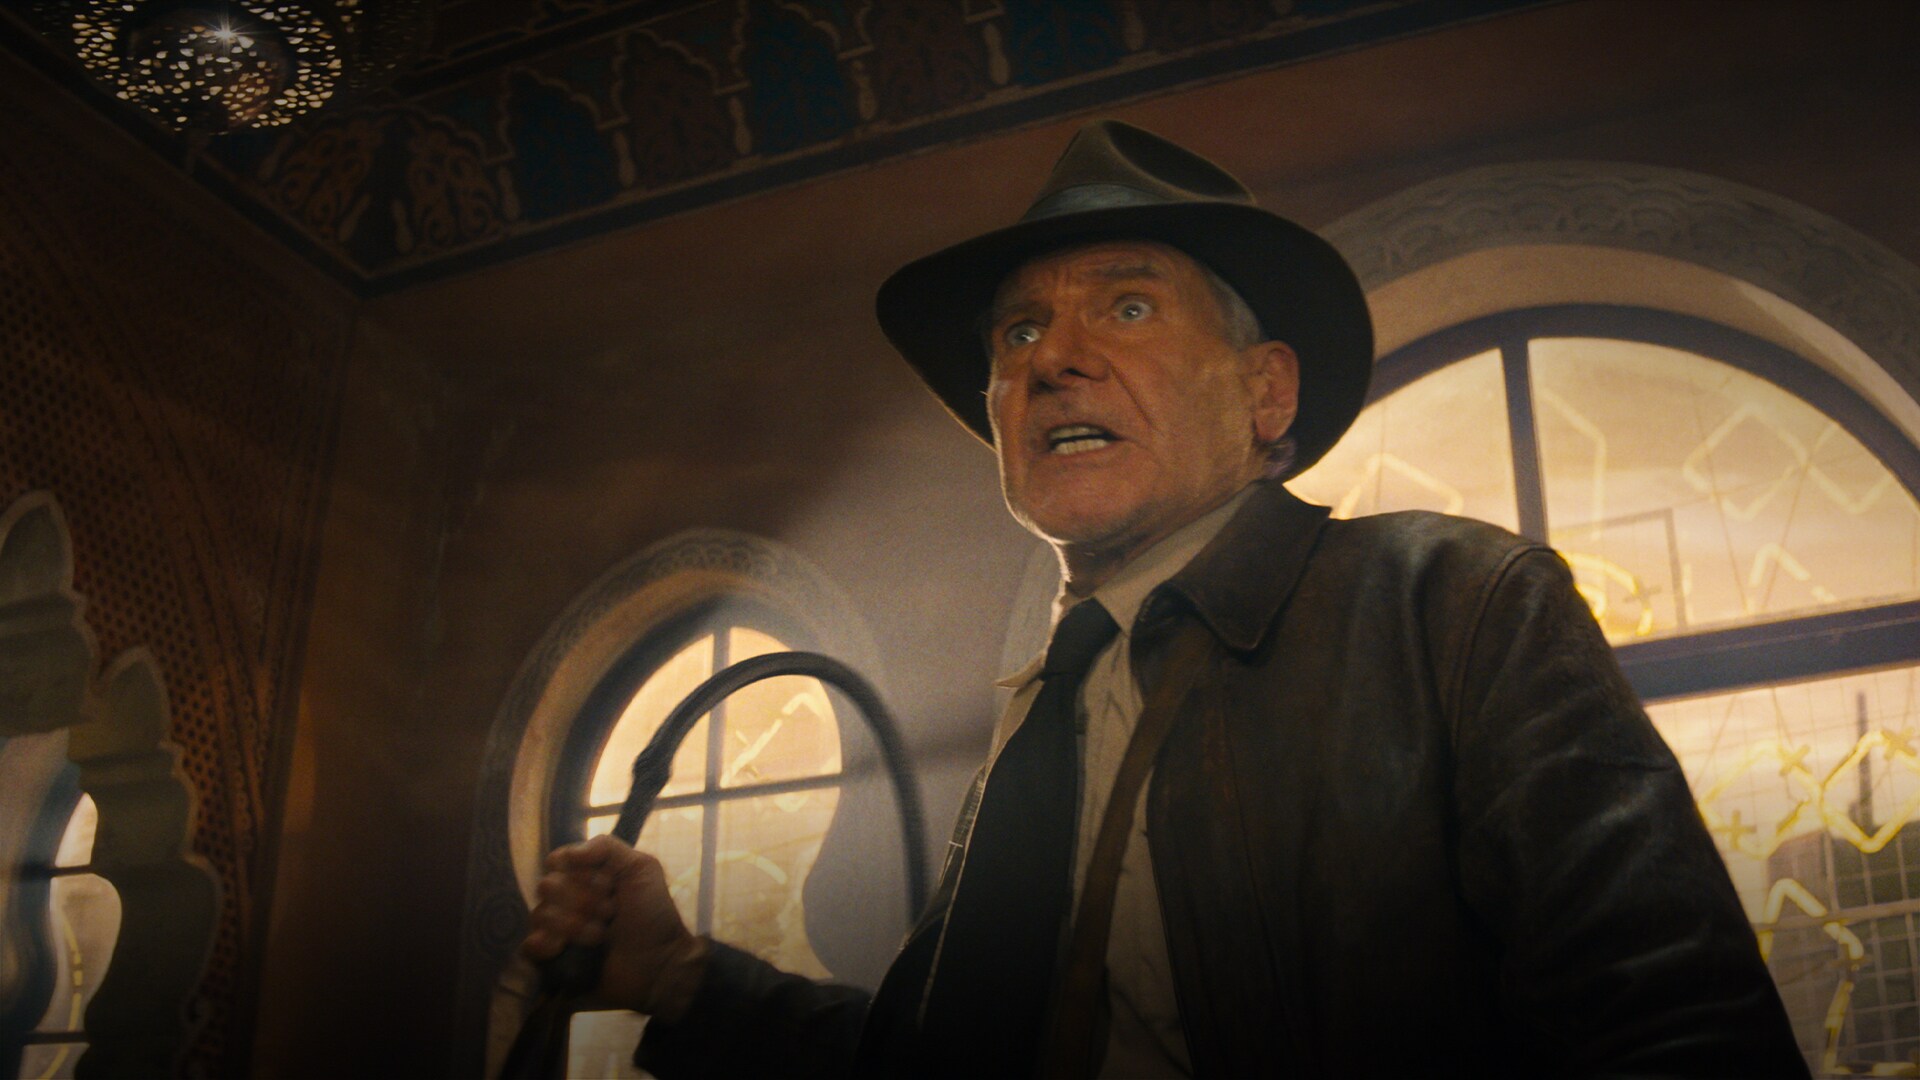 Indiana Jones és a sors tárcsája - 1. kedvcsináló előzetes